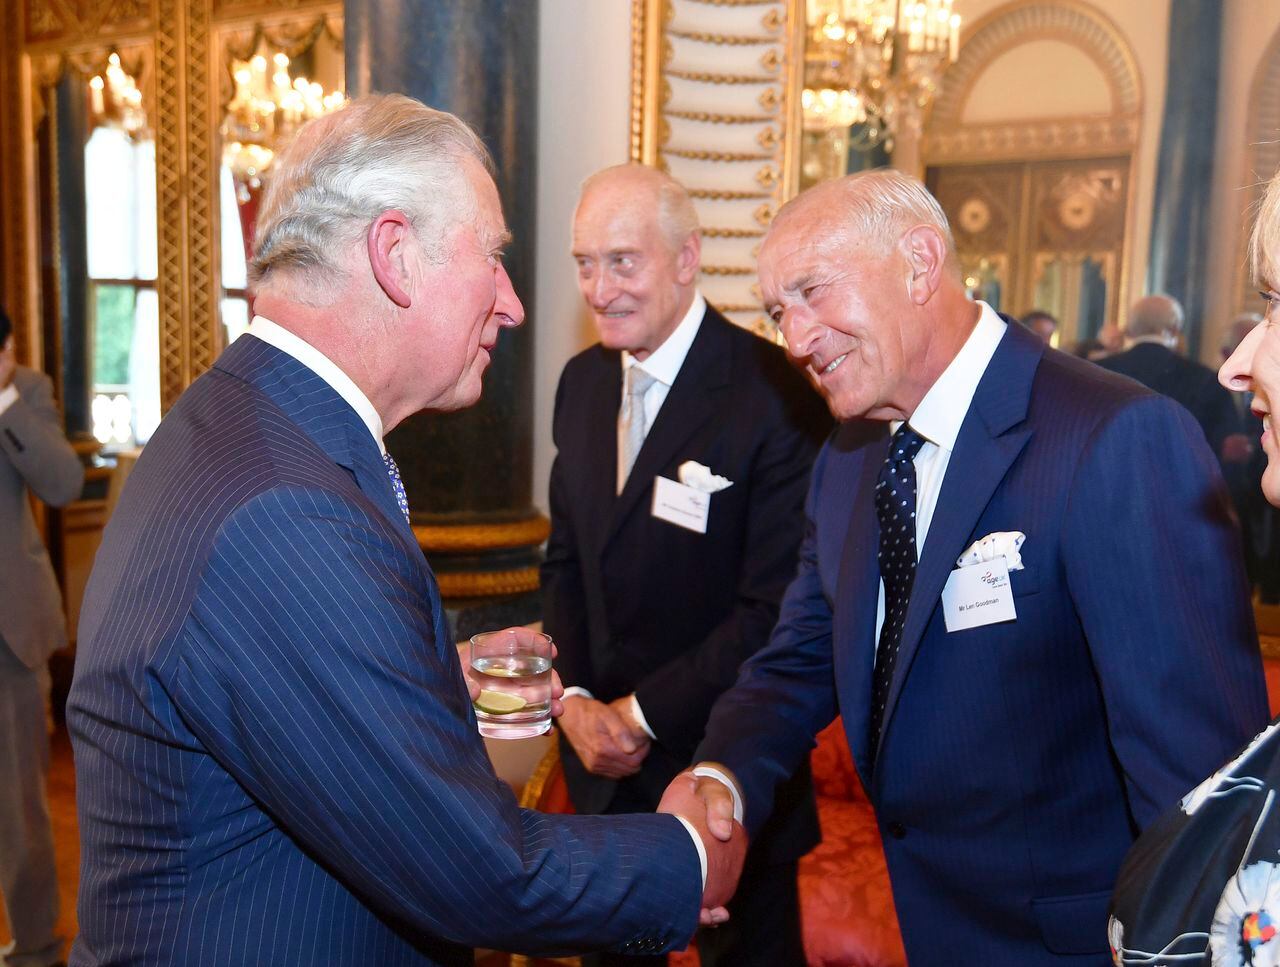 El príncipe Carlos de Gran Bretaña, a la izquierda, le da la mano a Len Goodman, durante una recepción para Age UK en el Palacio de Buckingham en Londres, el 6 de junio de 2018.